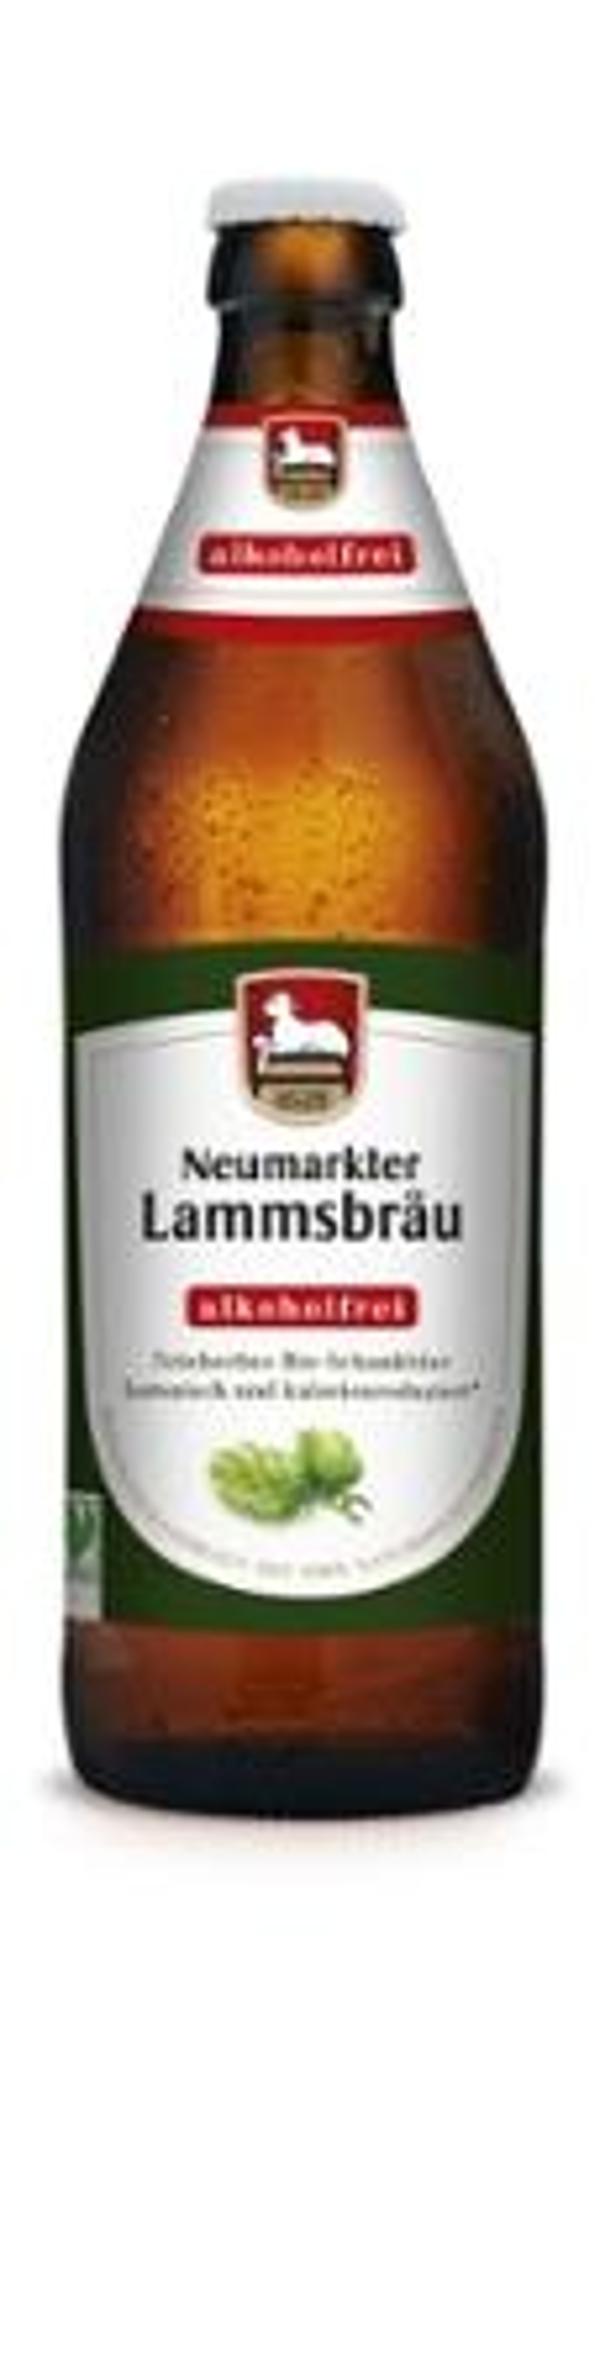 Produktfoto zu VPE Bier Lammsbräu Alkoholfrei 0,5 l Neumarkter Lammsbräu